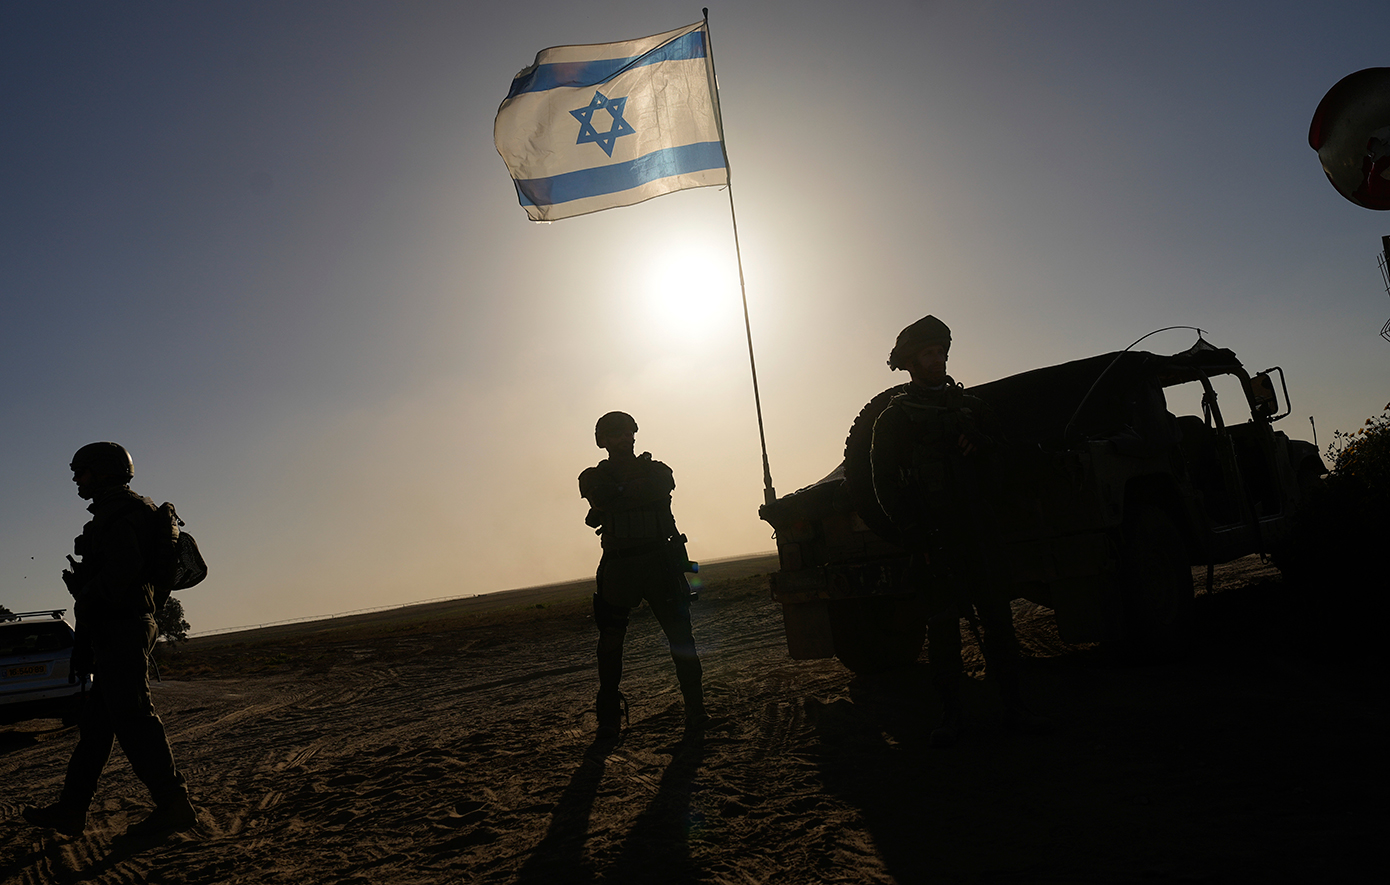 Οι Ρεπουμπλικάνοι προσπαθούν να αναγκάσουν τον Μπάιντεν να παραδώσει αμέσως όλη την εγκεκριμένη στρατιωτική βοήθεια στο Ισραήλ